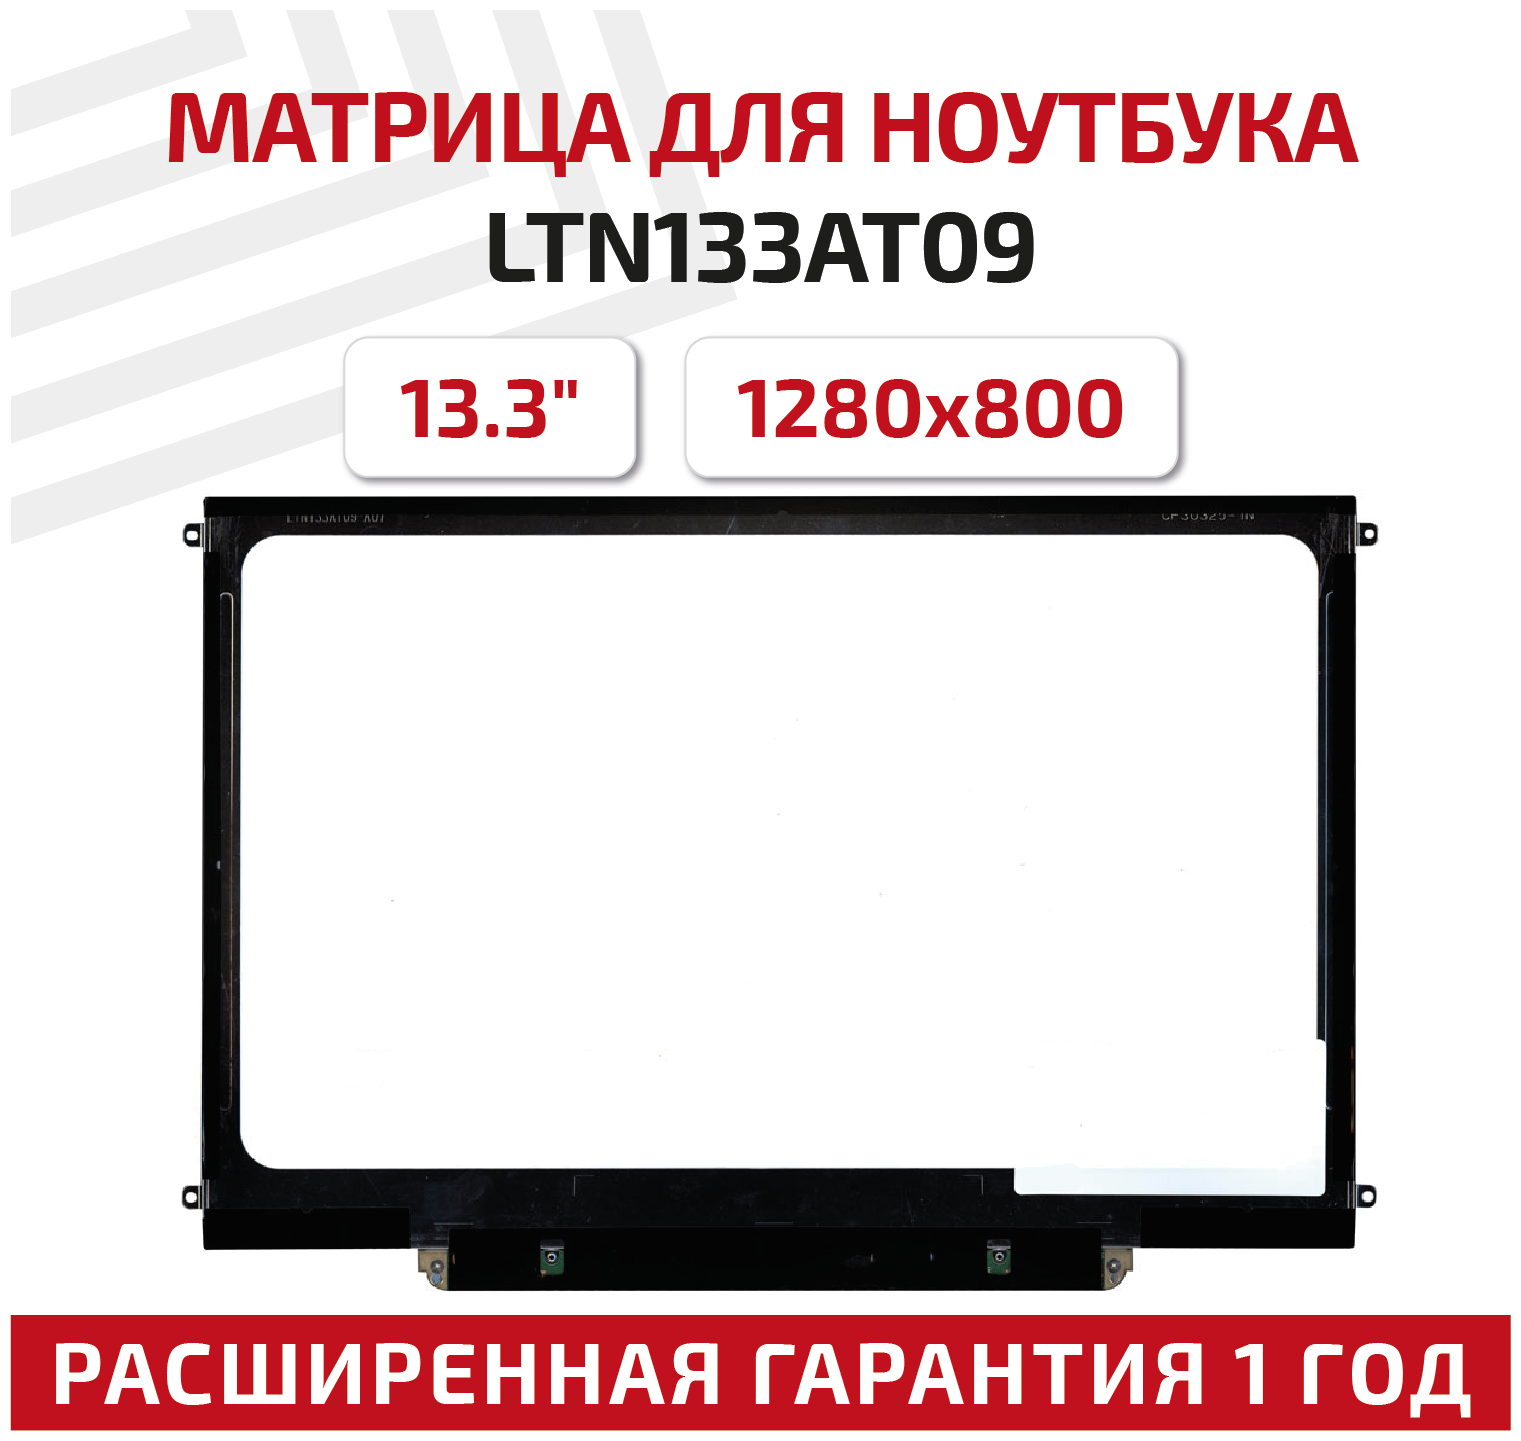 Матрица (экран) для ноутбука LTN133AT09, 13.3", 1280x800, Slim (тонкая), 30-pin, светодиодная (LED), глянцевая